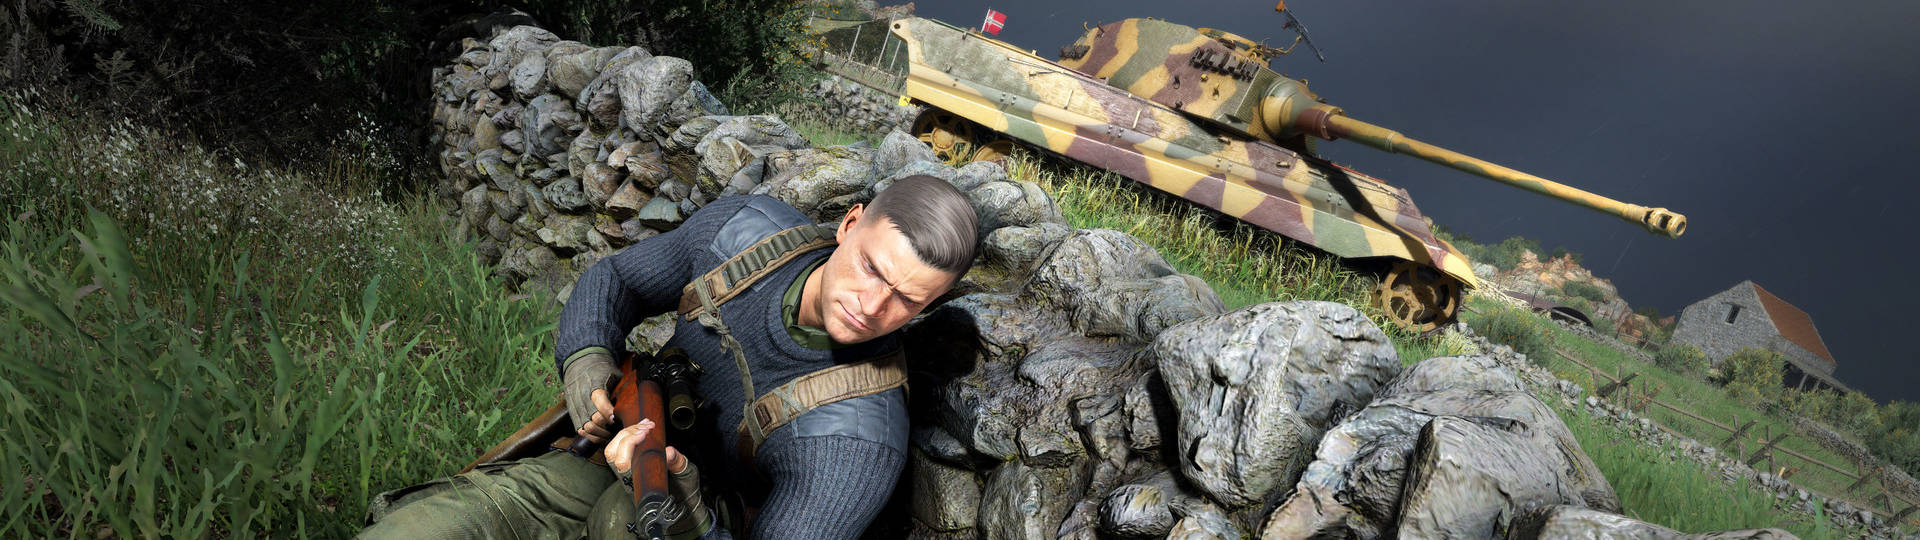 Sniper Elite 5 Epic Games Store Irisan yang ditunda